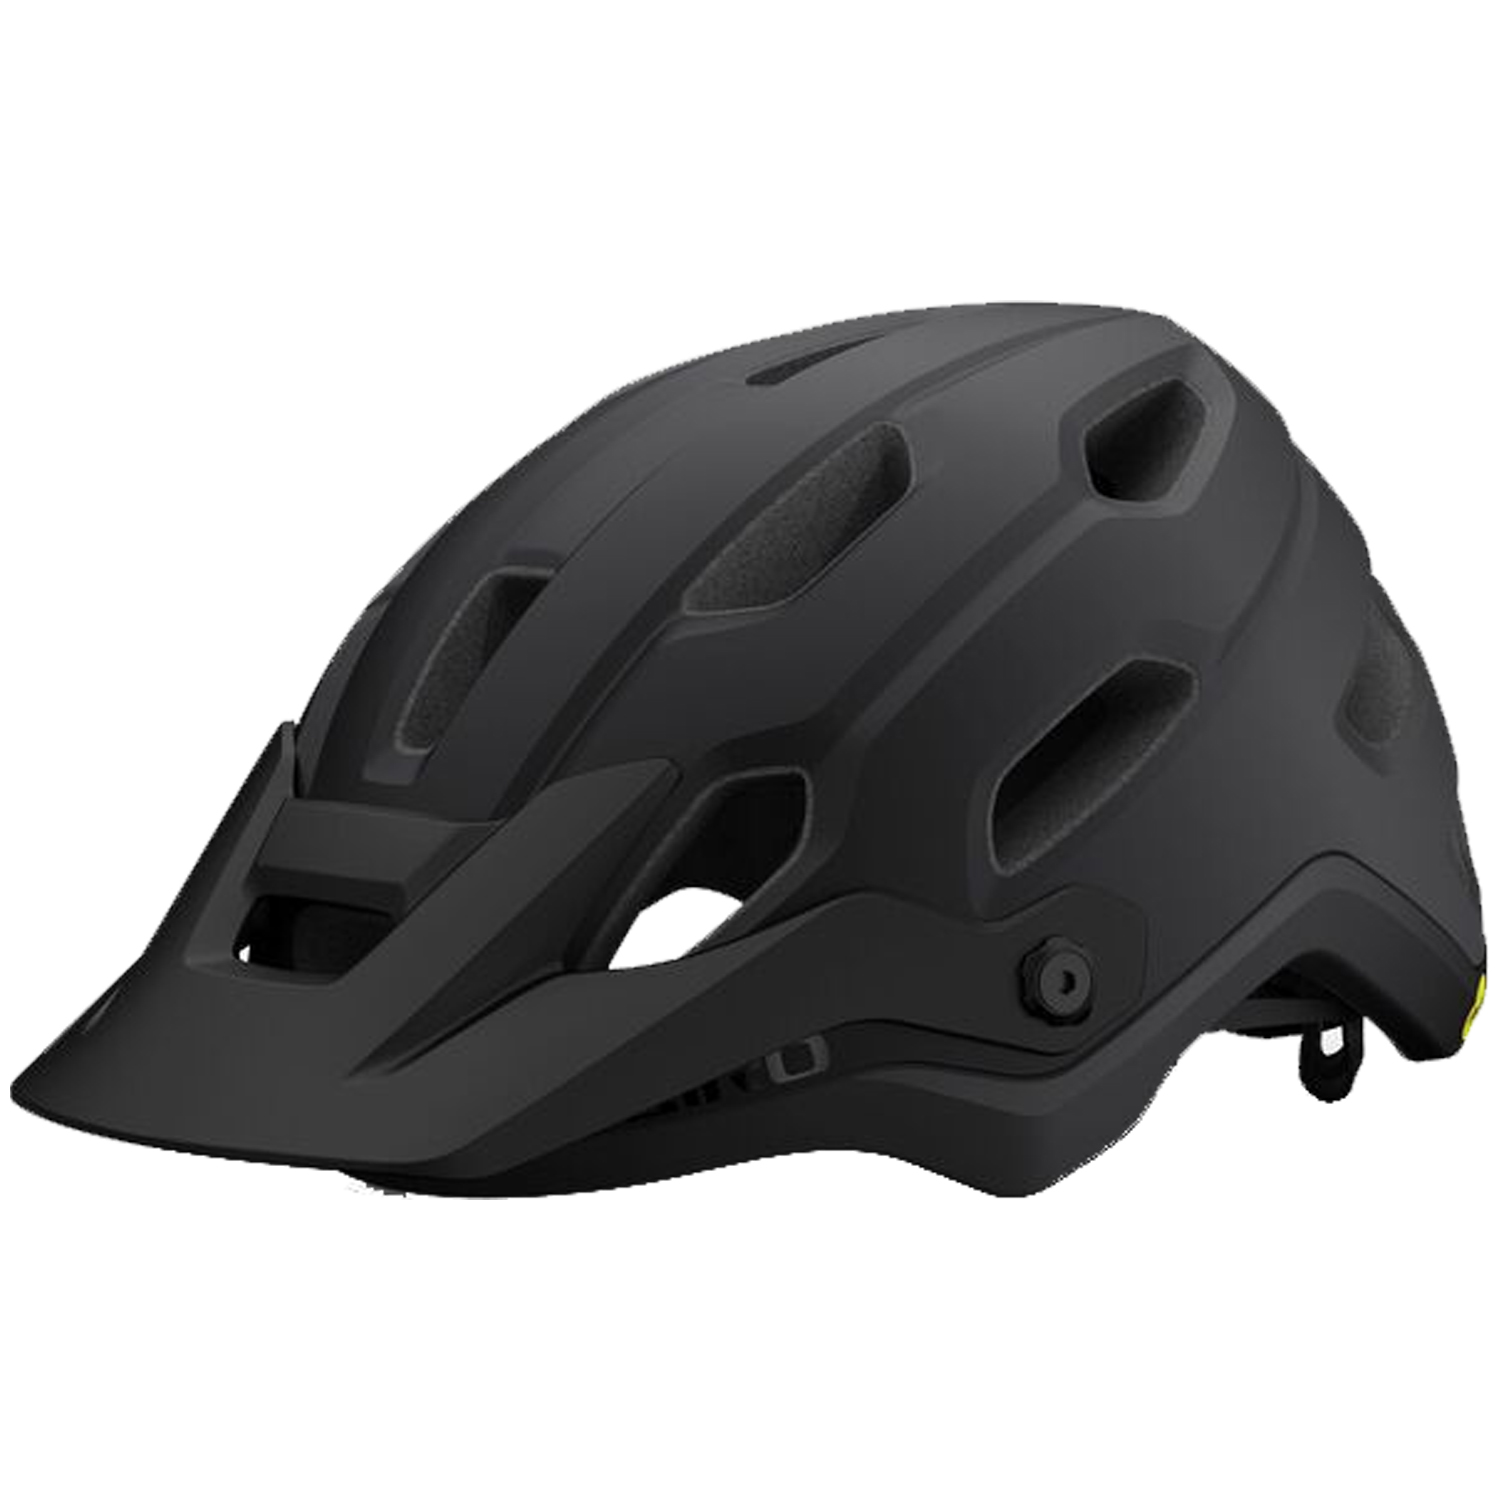 Giro | Source Mips Helmet Men's | Size Large in Matte Black Fade